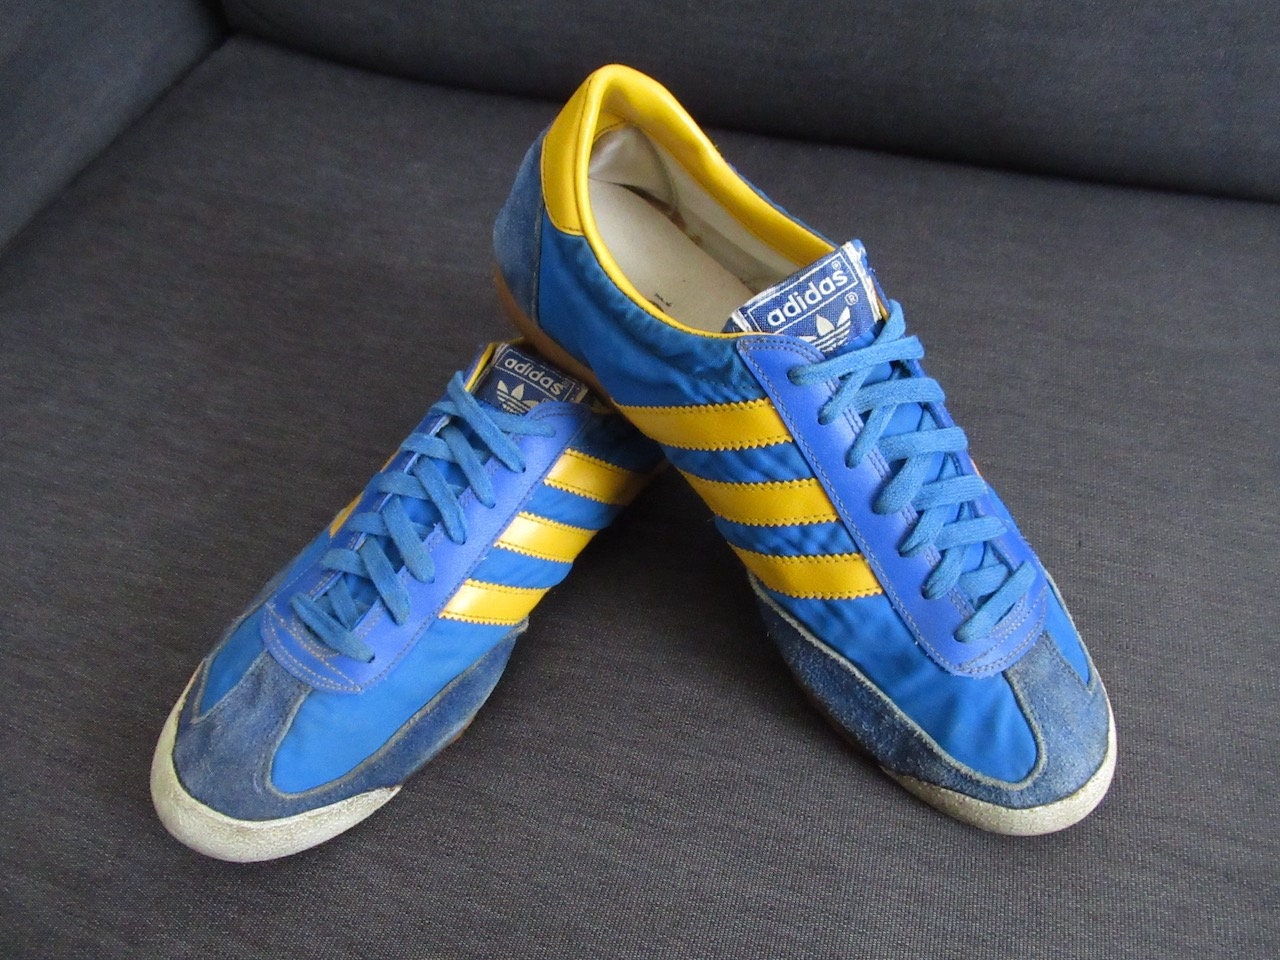 Adidas Men's Originals Beckenbauer Classic Sneakers Retro Trainers Blue